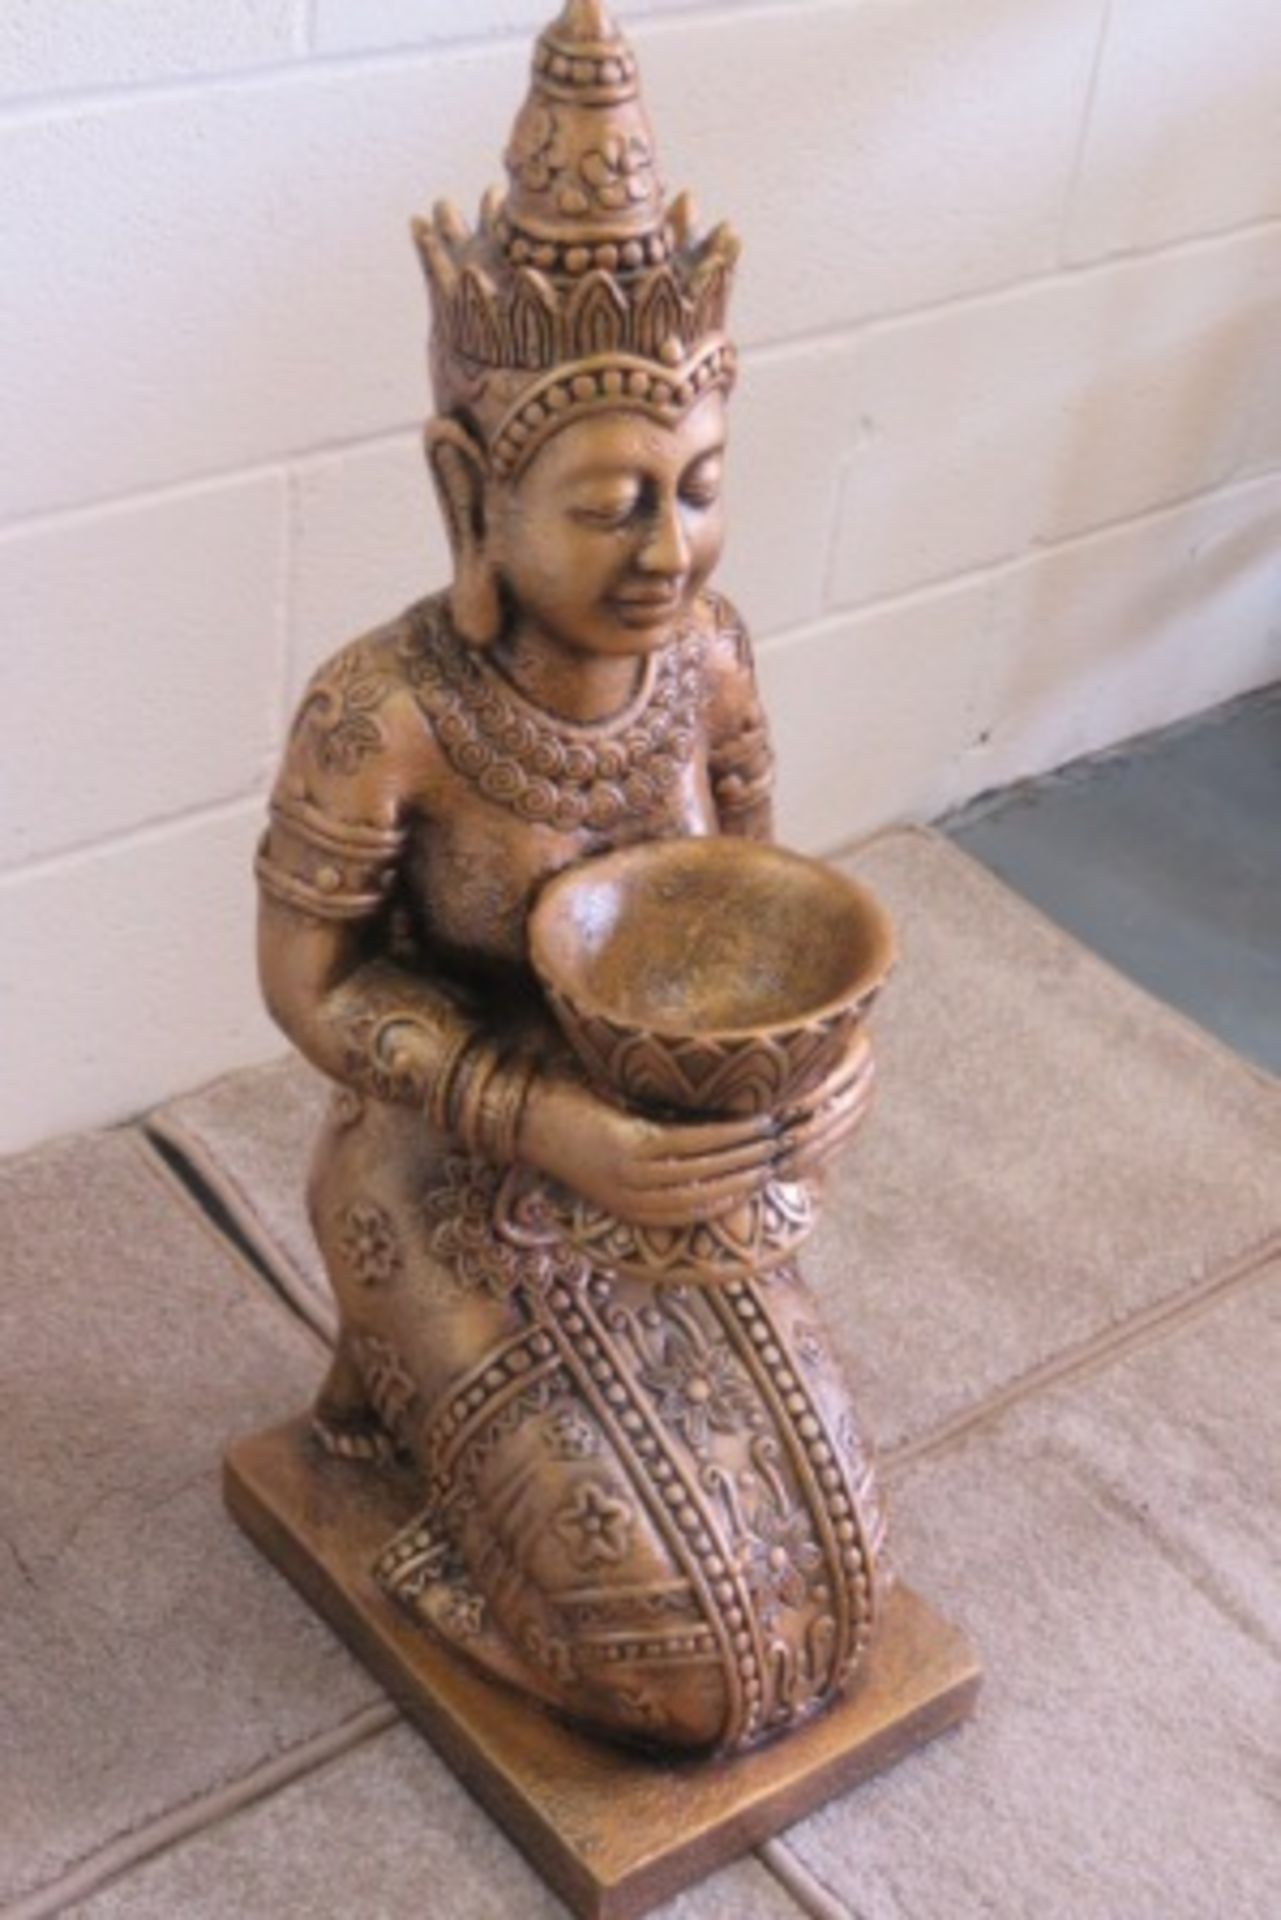 Oriental Priestess Statuette - 3 Feet Tall